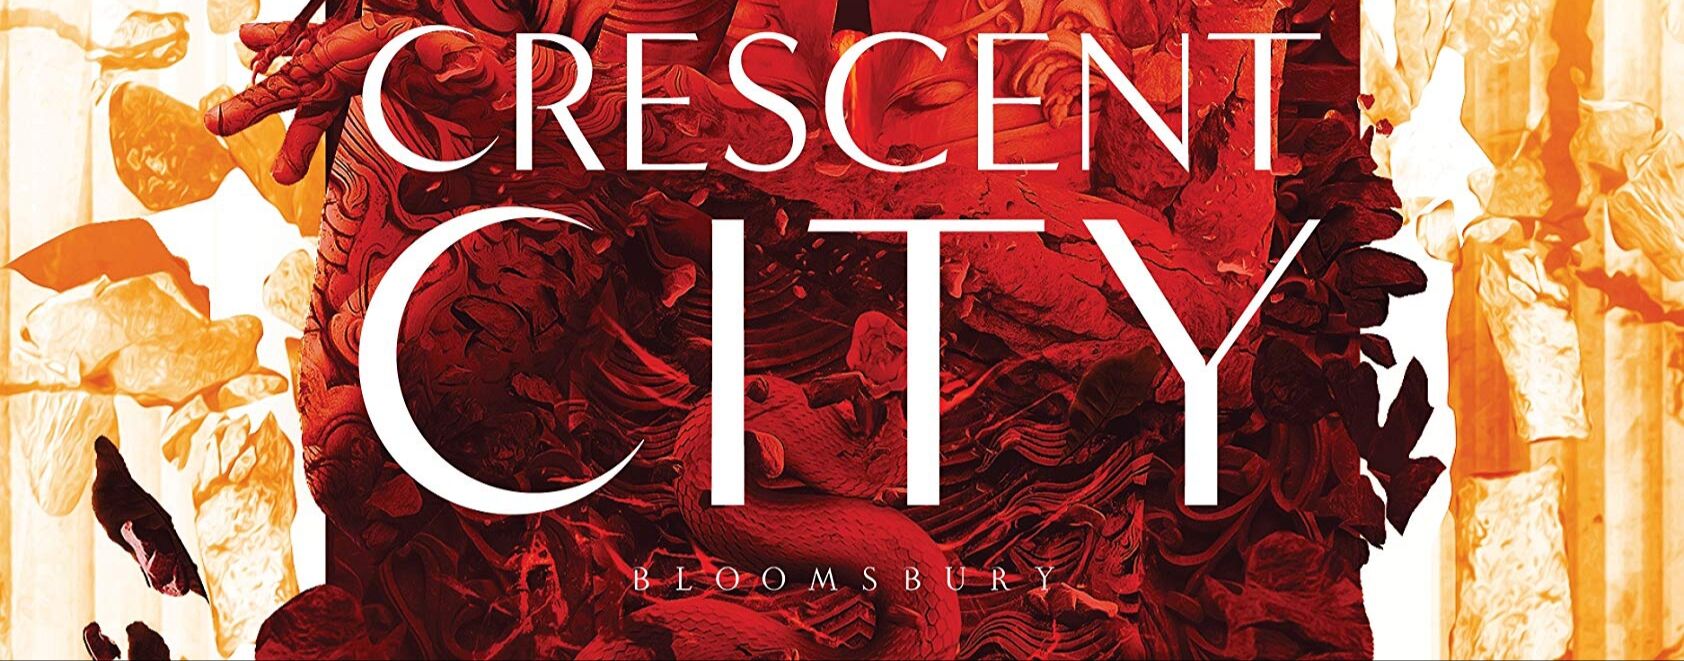 Crescent City Playlist Pt. 2  Crescent city, Crescent, Sarah j maas